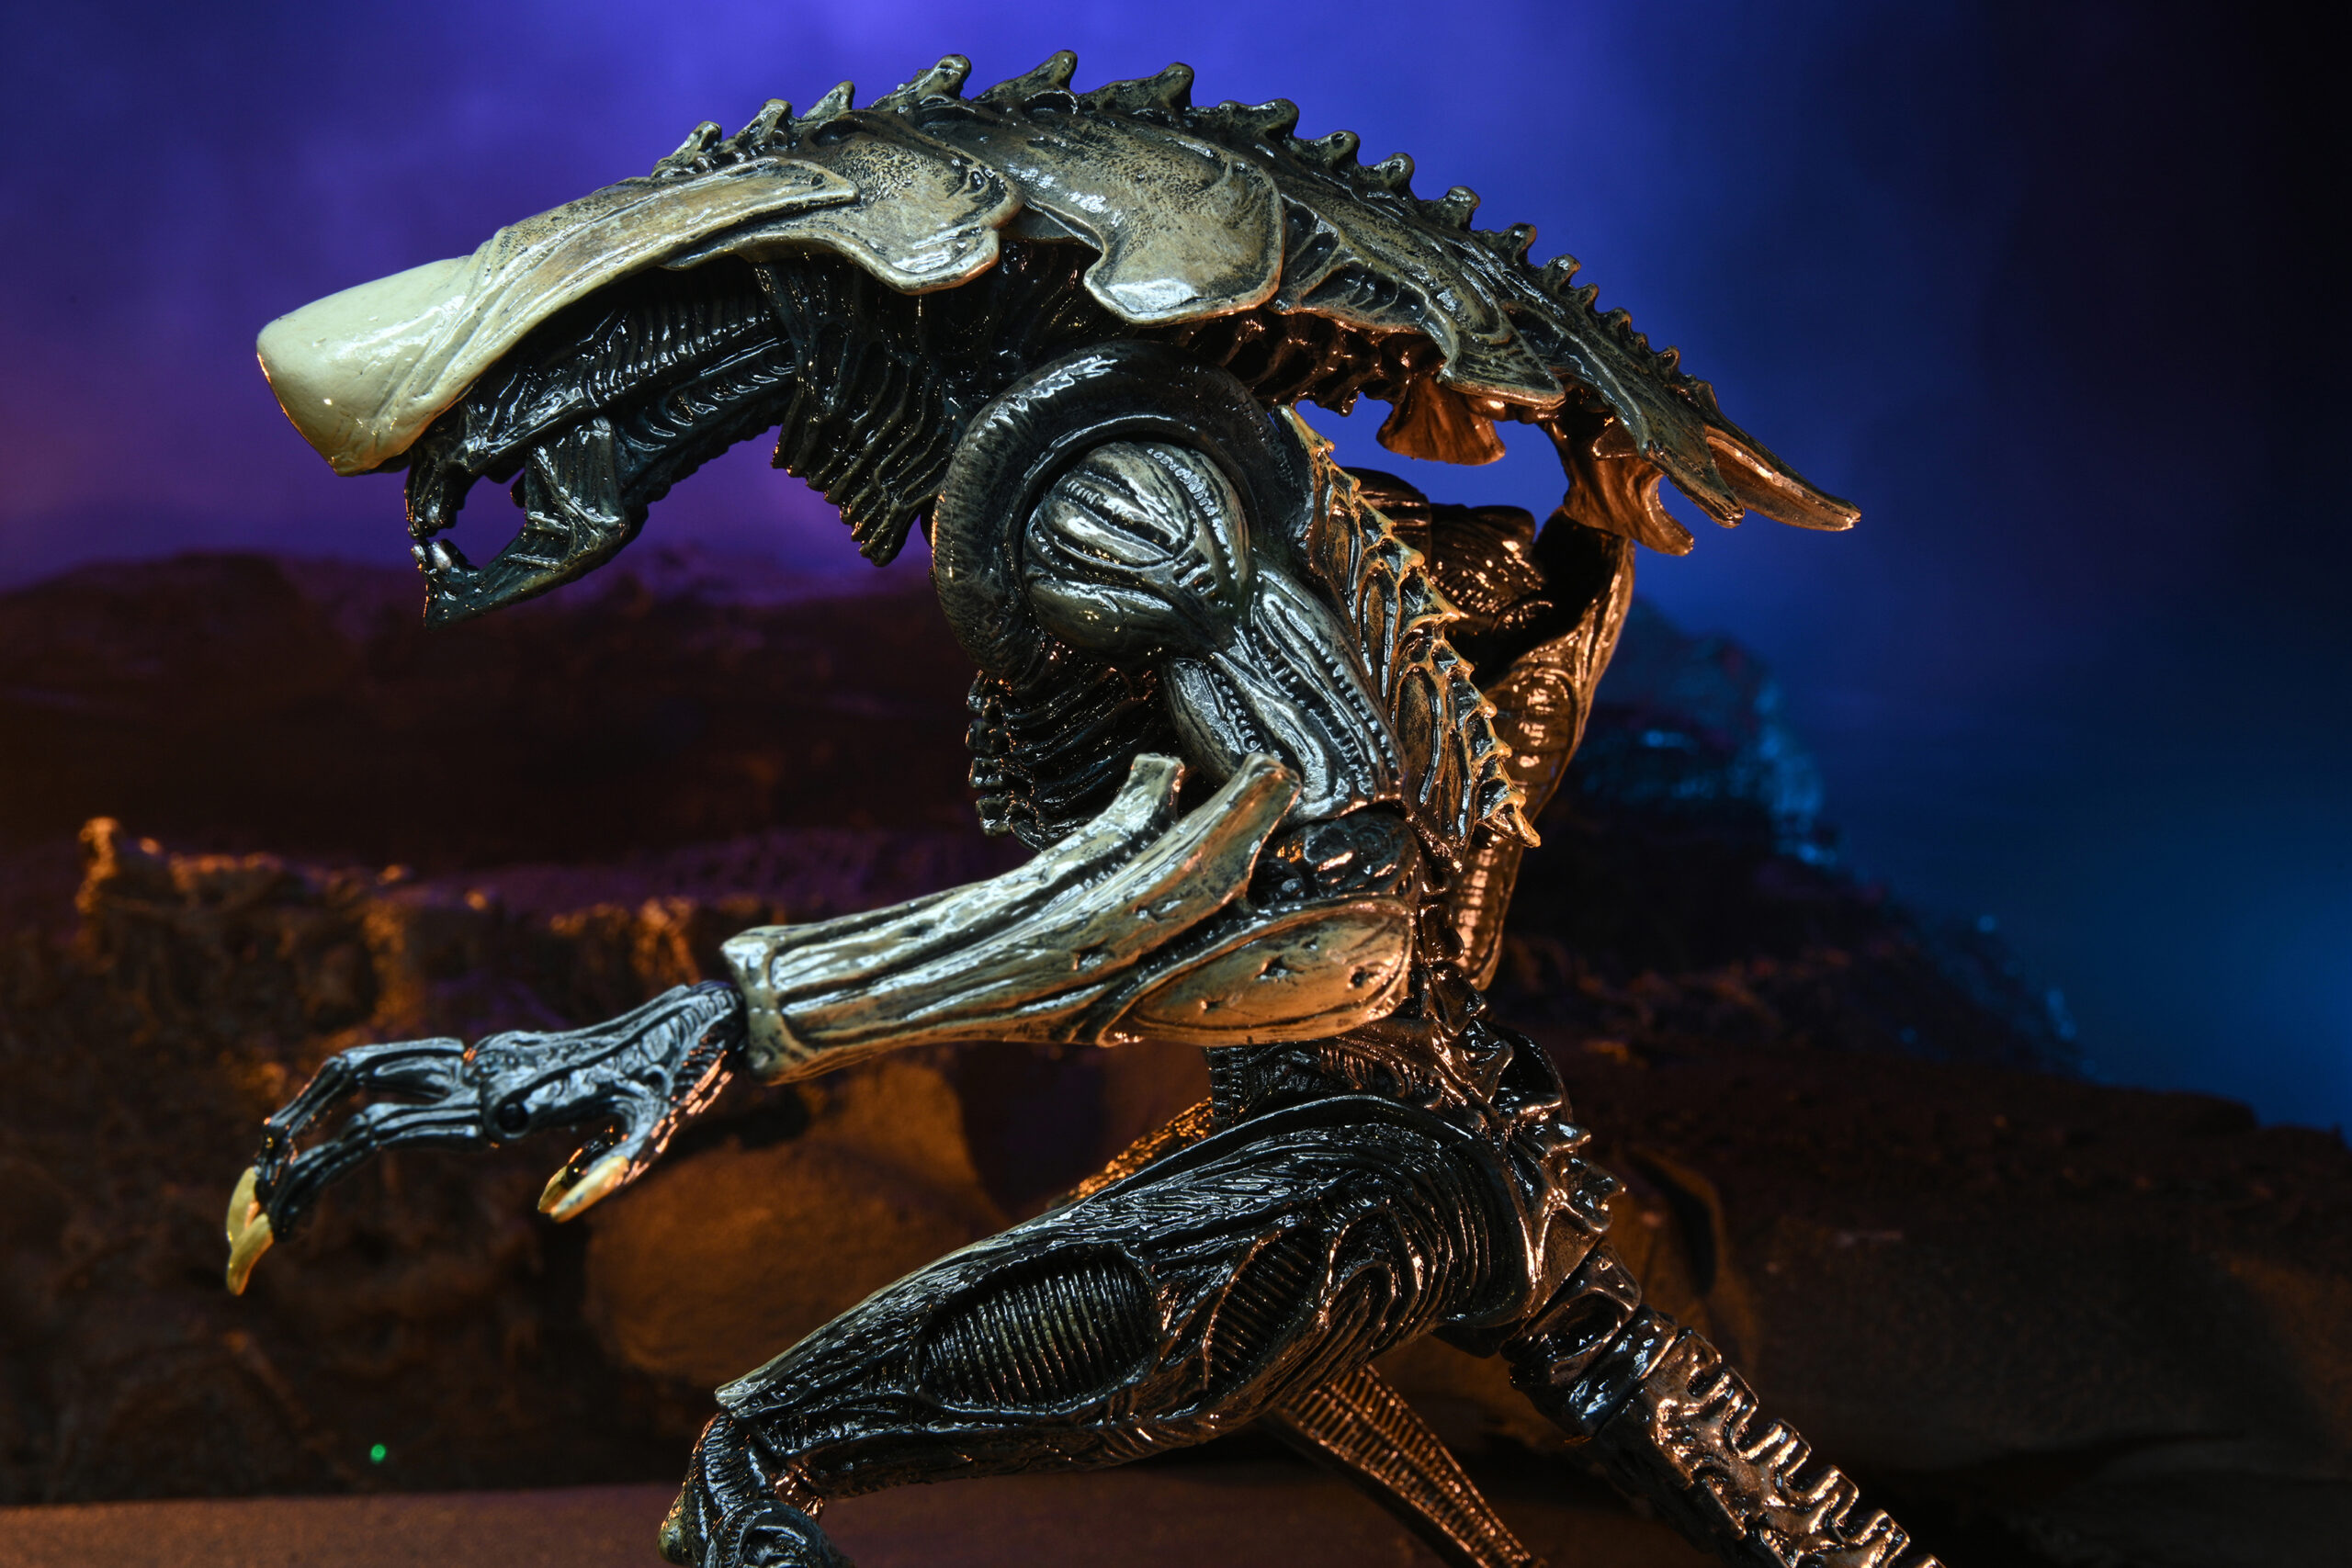 Movie Deco Alien vs. Predator Aliens Set of 3 From NECA